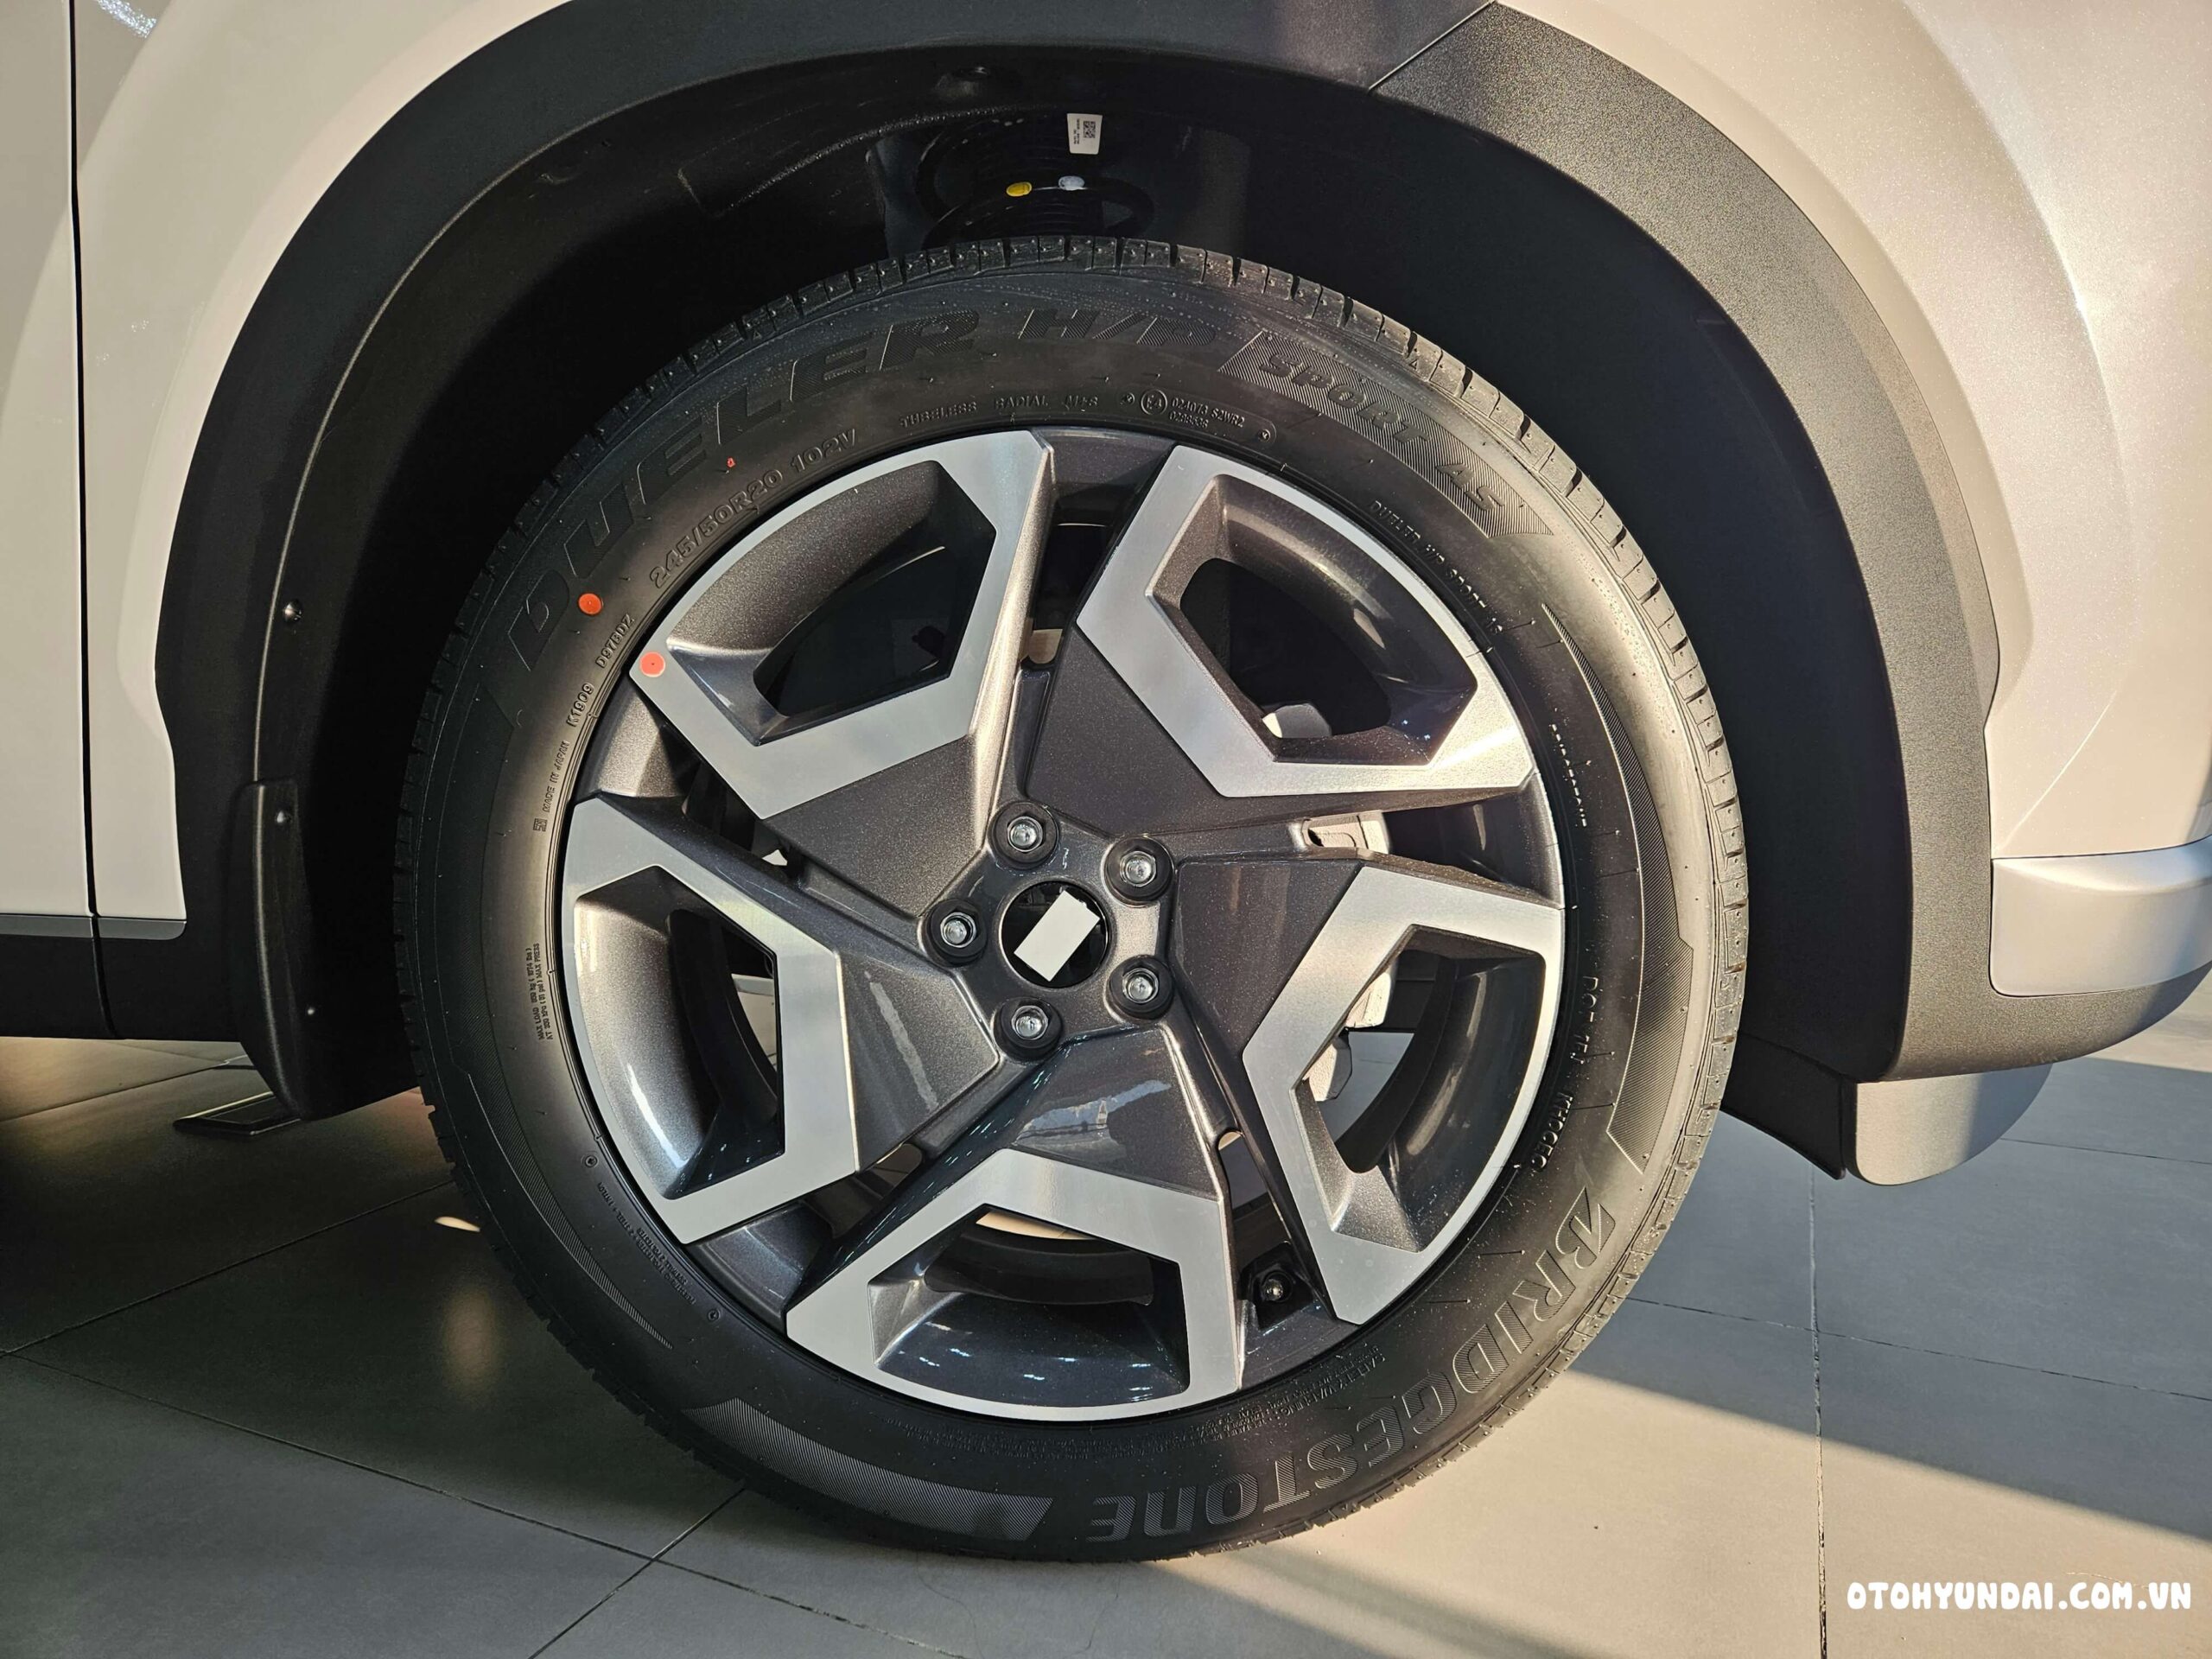 Hyundai palisade | Hyundai Palisade được hỗ trợ bởi bộ vành hợp kim 18 inch, giúp nâng đỡ phần thân trên của xe.